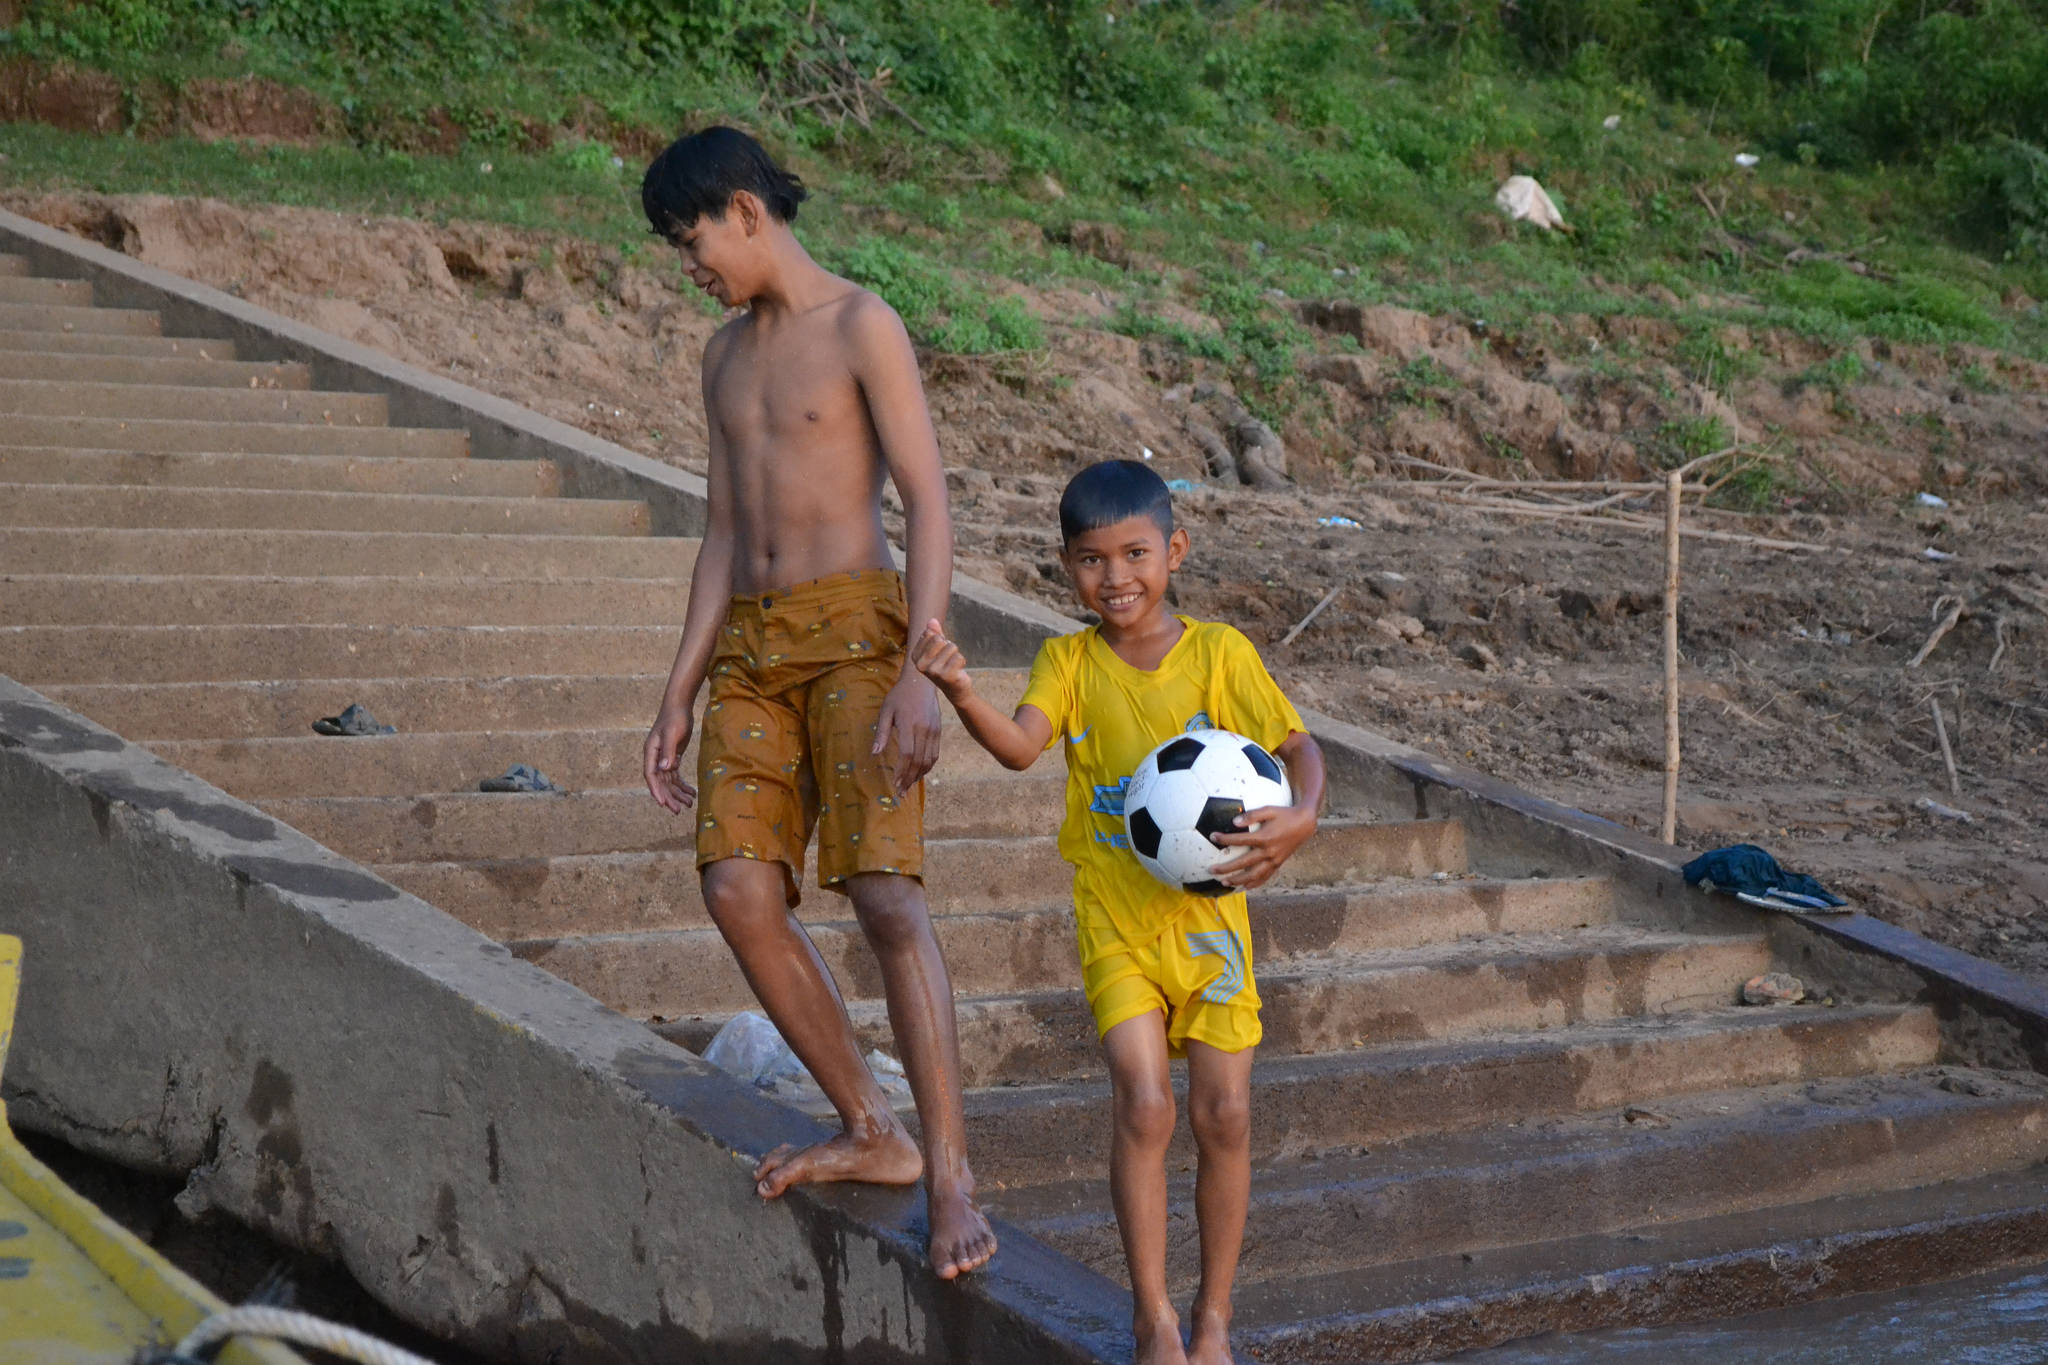 Cambodian children